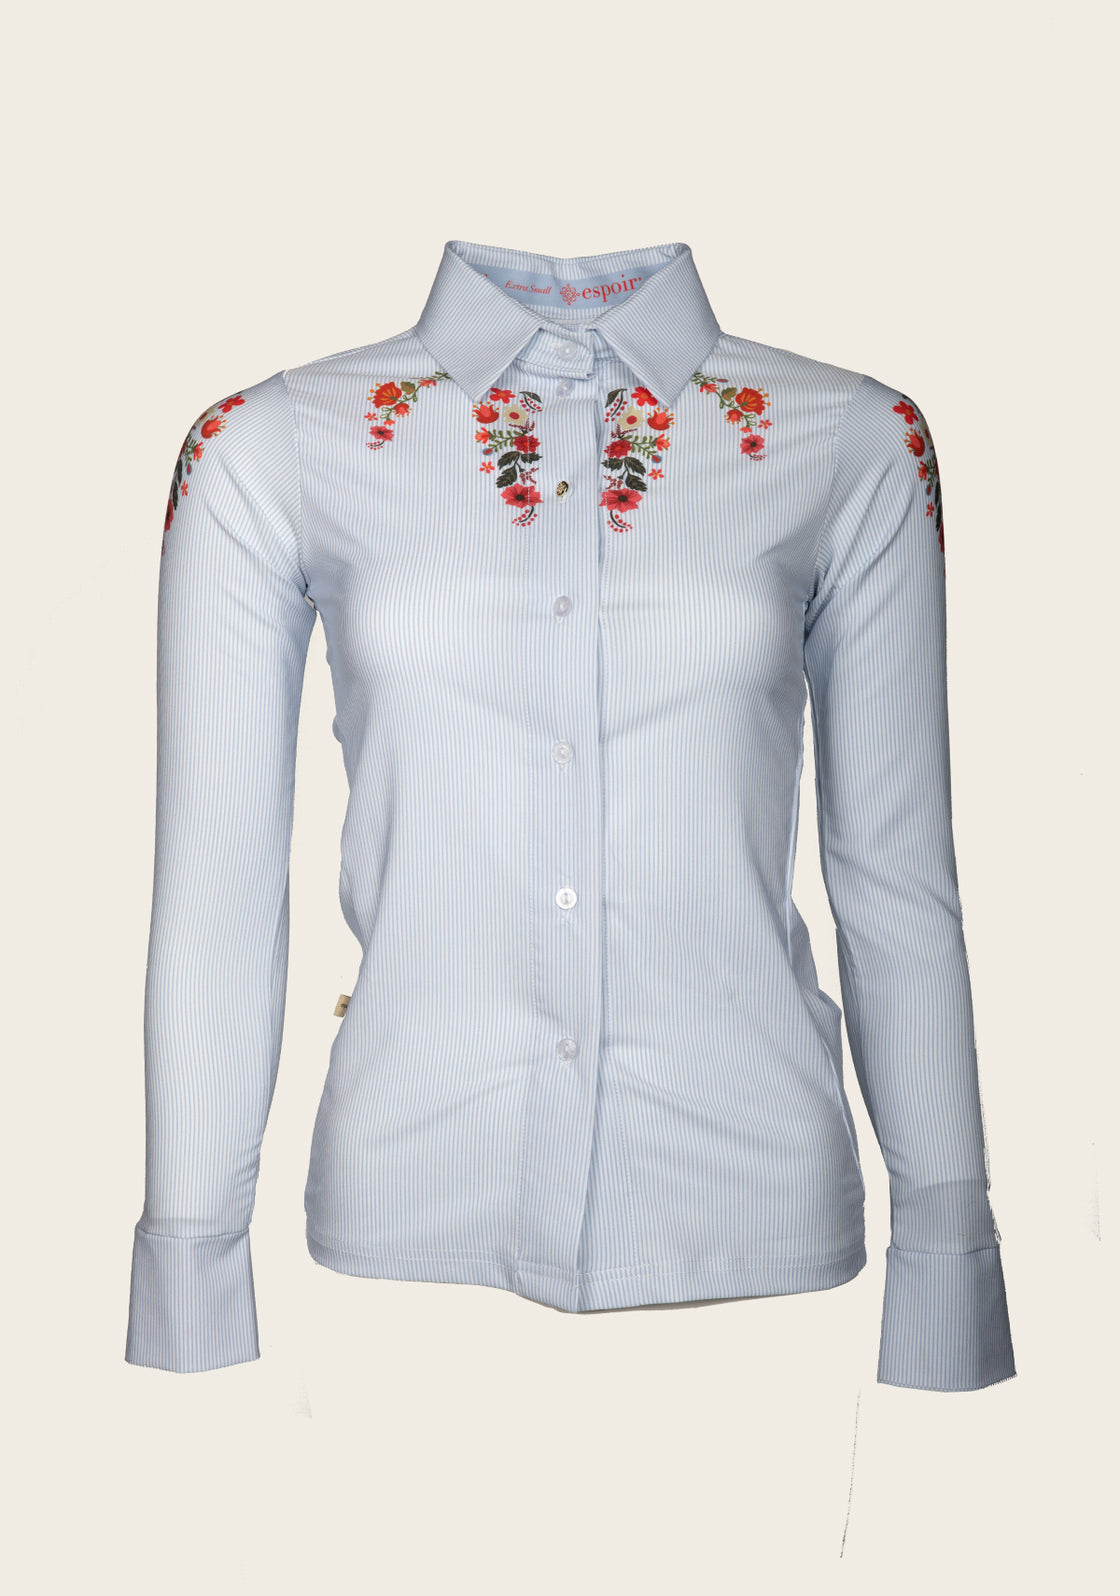 Joie Floral & Blue Stripe Ladies’ Button Shirt